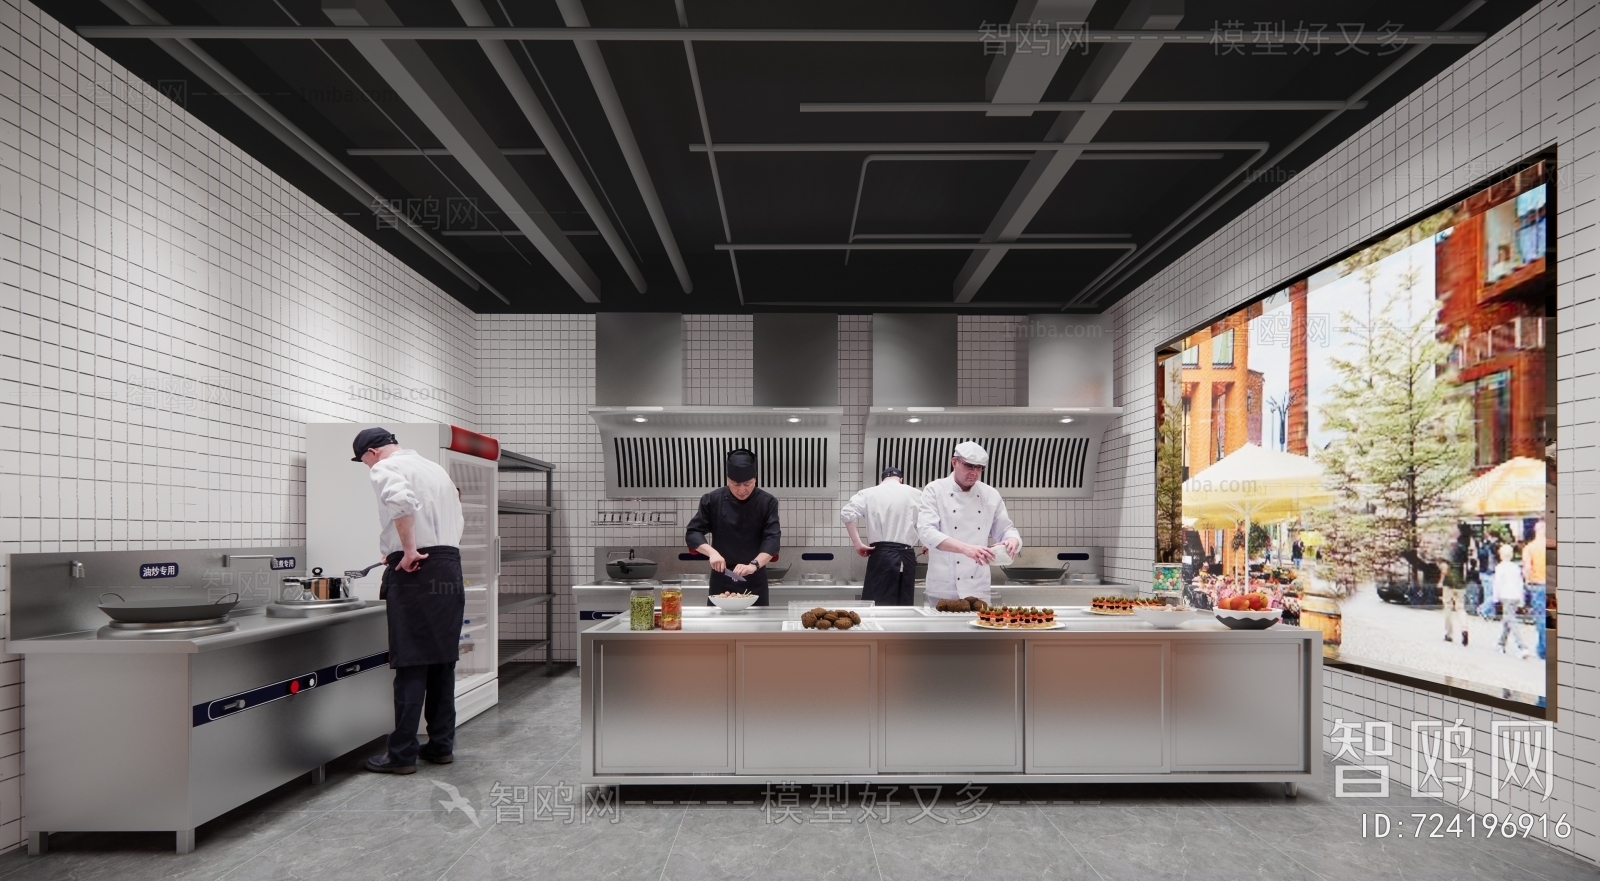 2014厨房整体橱柜效果图大放送 - 阿里巴巴商友圈